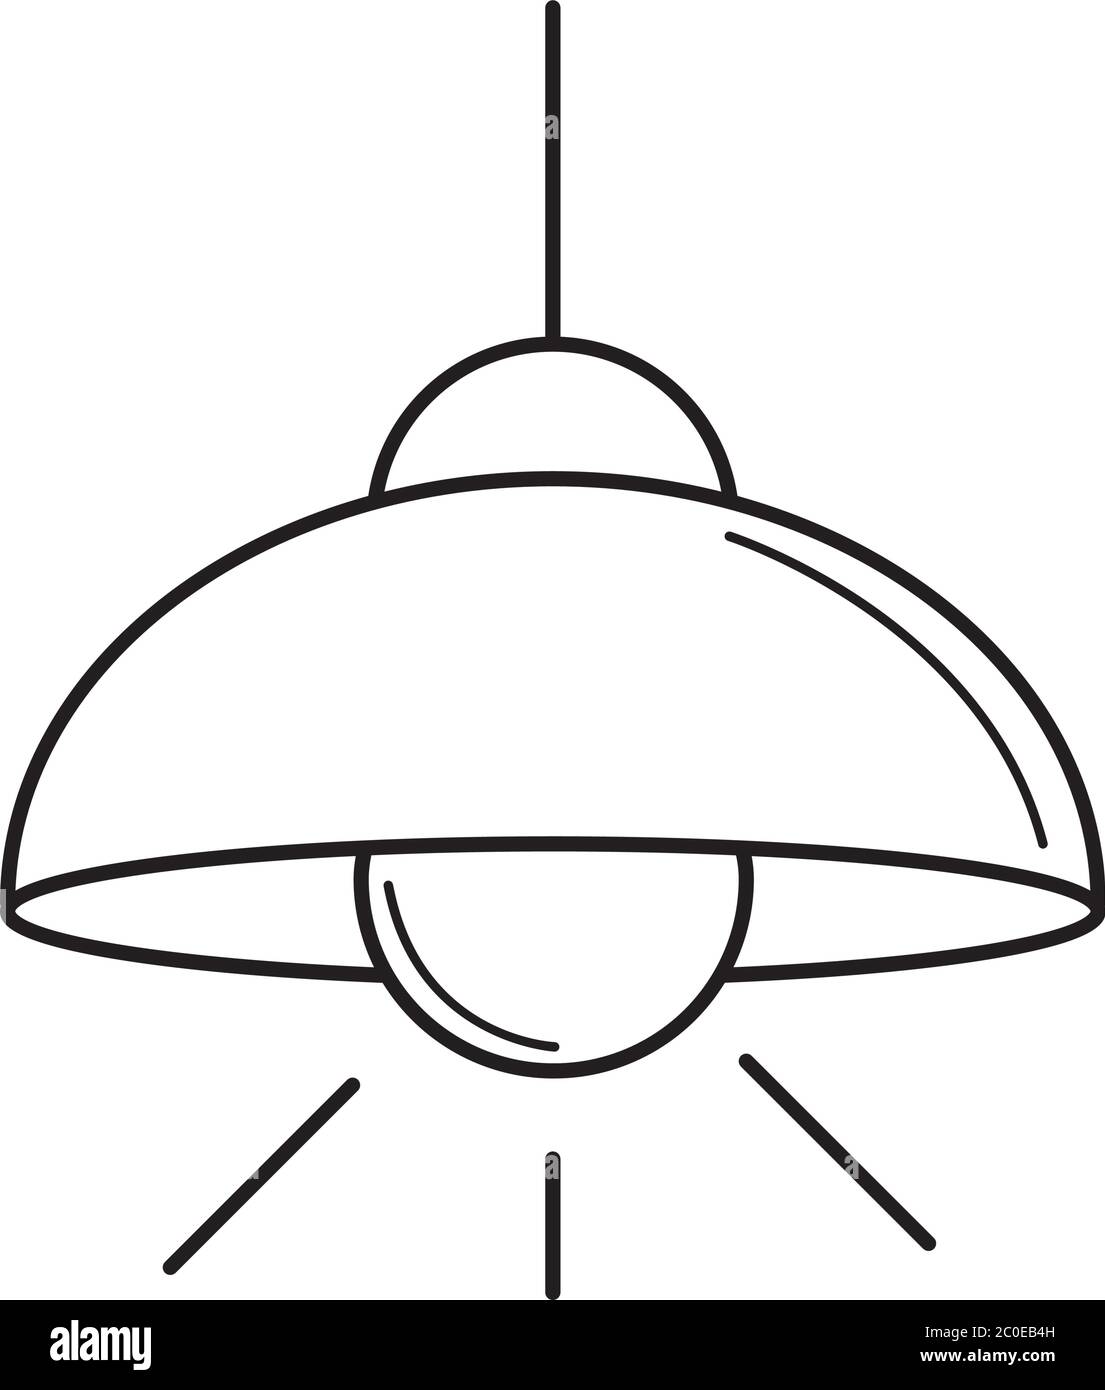 LED-Lampe Im Warndreieck. Lineares Symbol Mit Dünnem Umriss. Ein Linienstil  Lizenzfrei nutzbare SVG, Vektorgrafiken, Clip Arts, Illustrationen. Image  102130801.